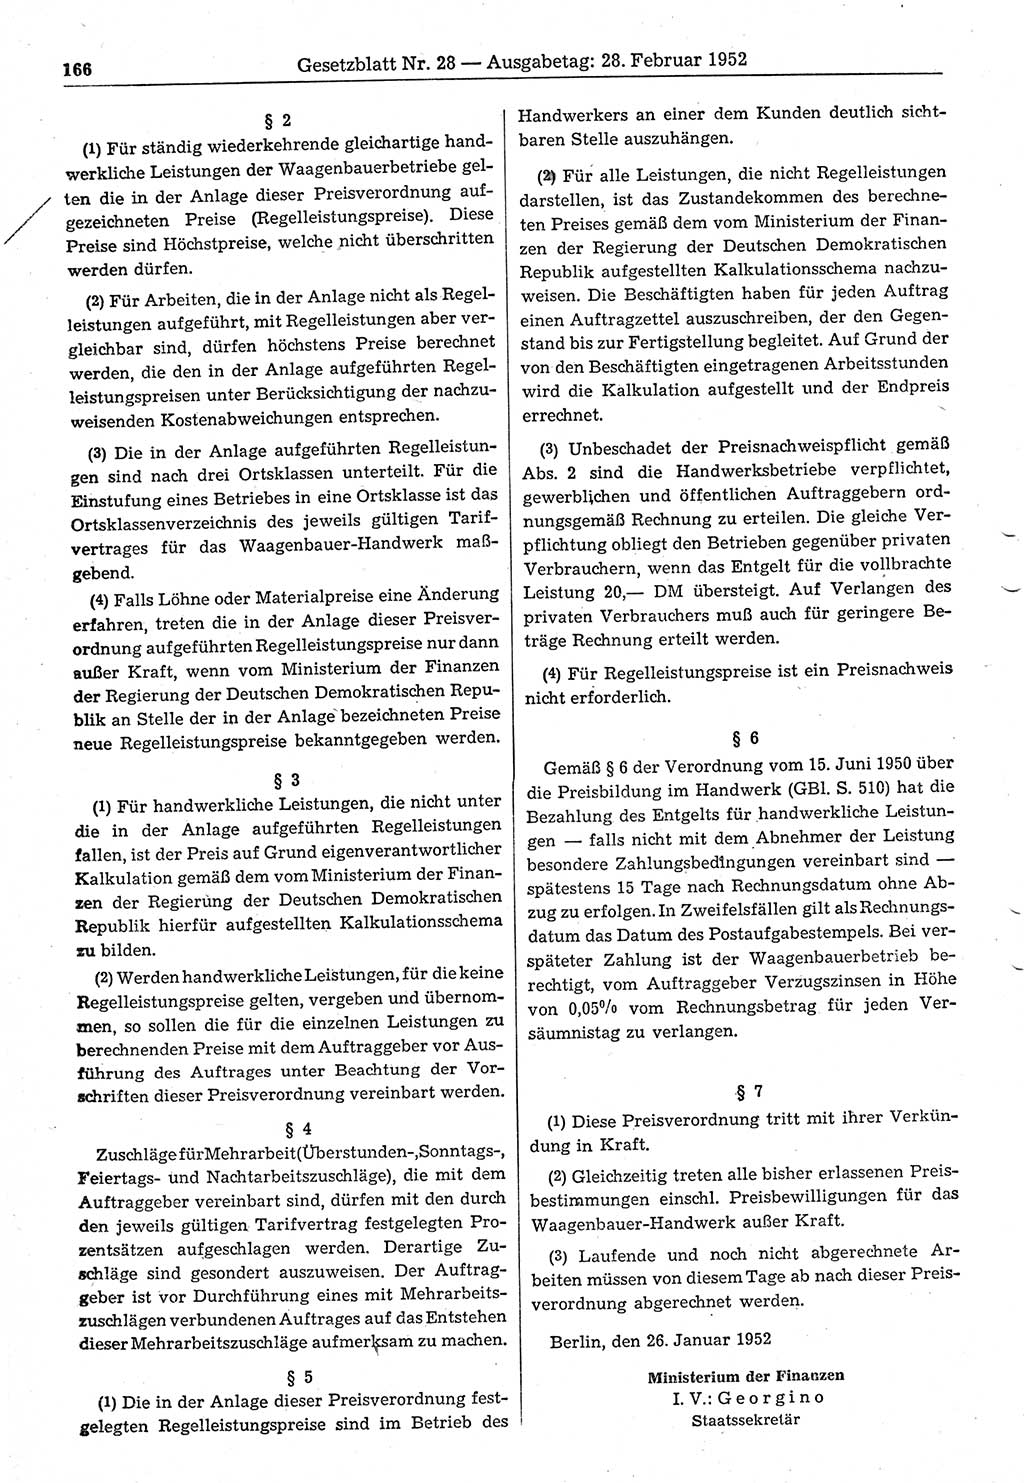 Gesetzblatt (GBl.) der Deutschen Demokratischen Republik (DDR) 1952, Seite 166 (GBl. DDR 1952, S. 166)